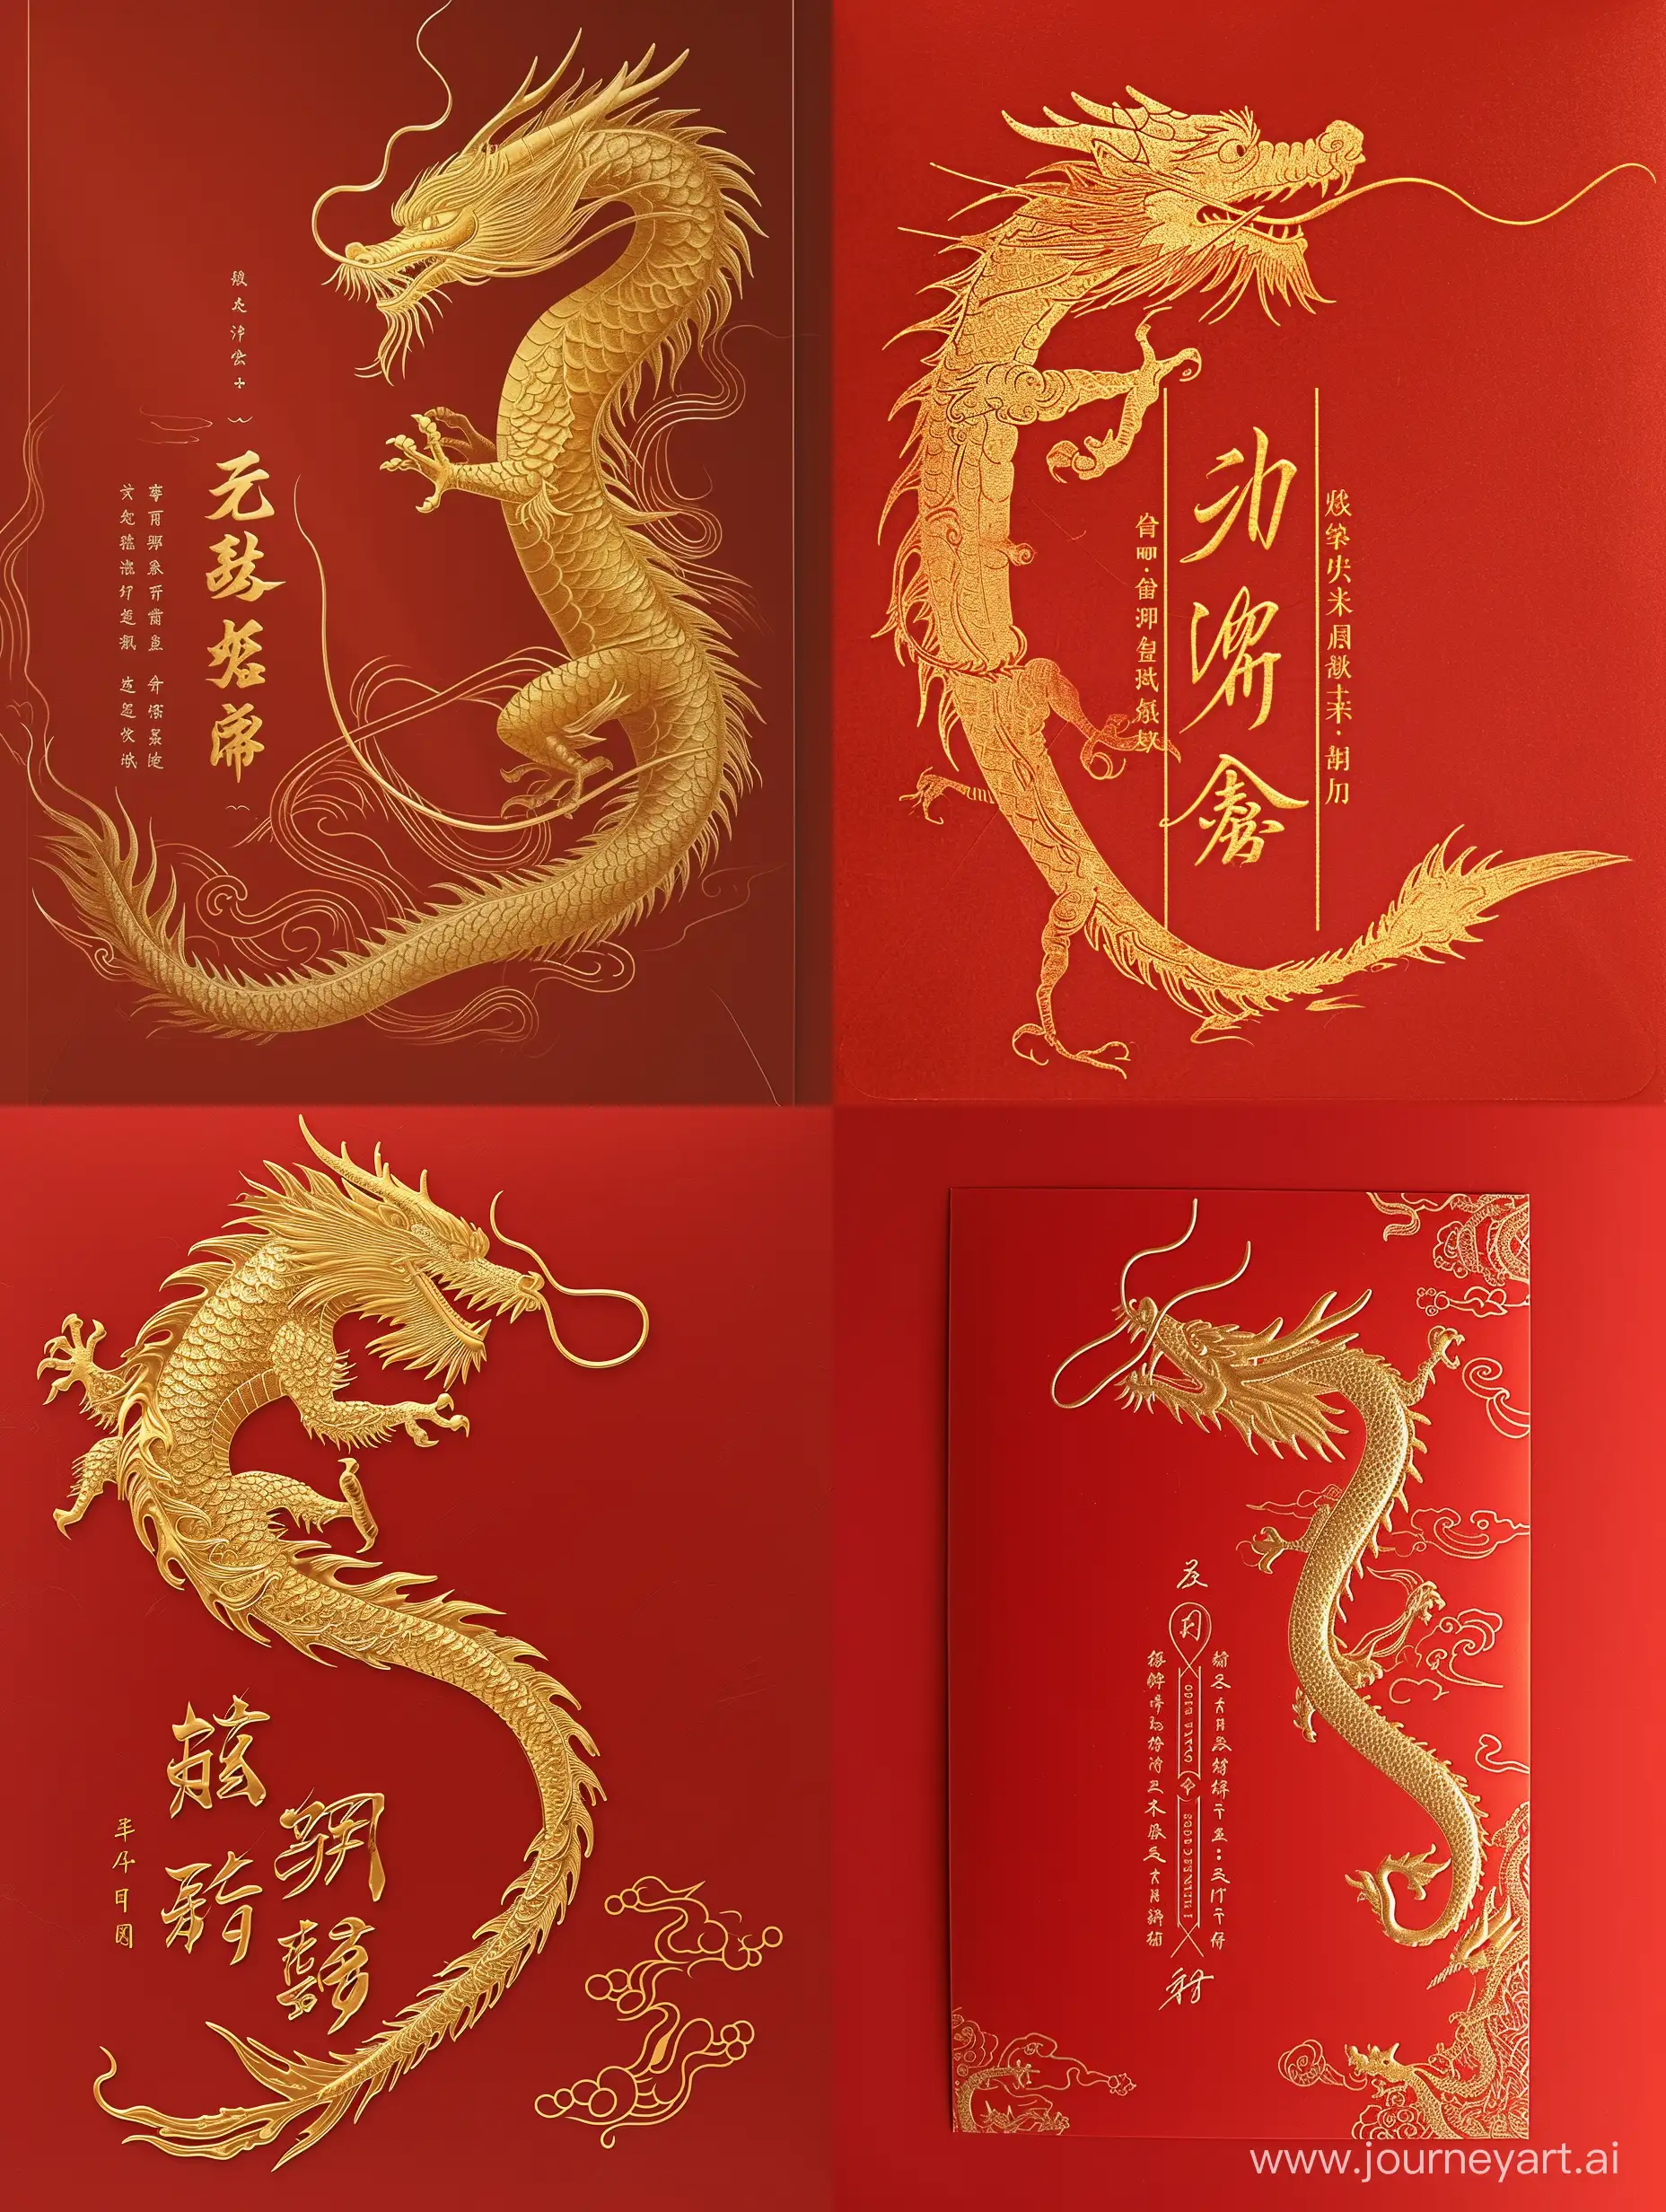 Prosperous-Golden-Dragon-Soaring-for-Happy-Spring-Festival